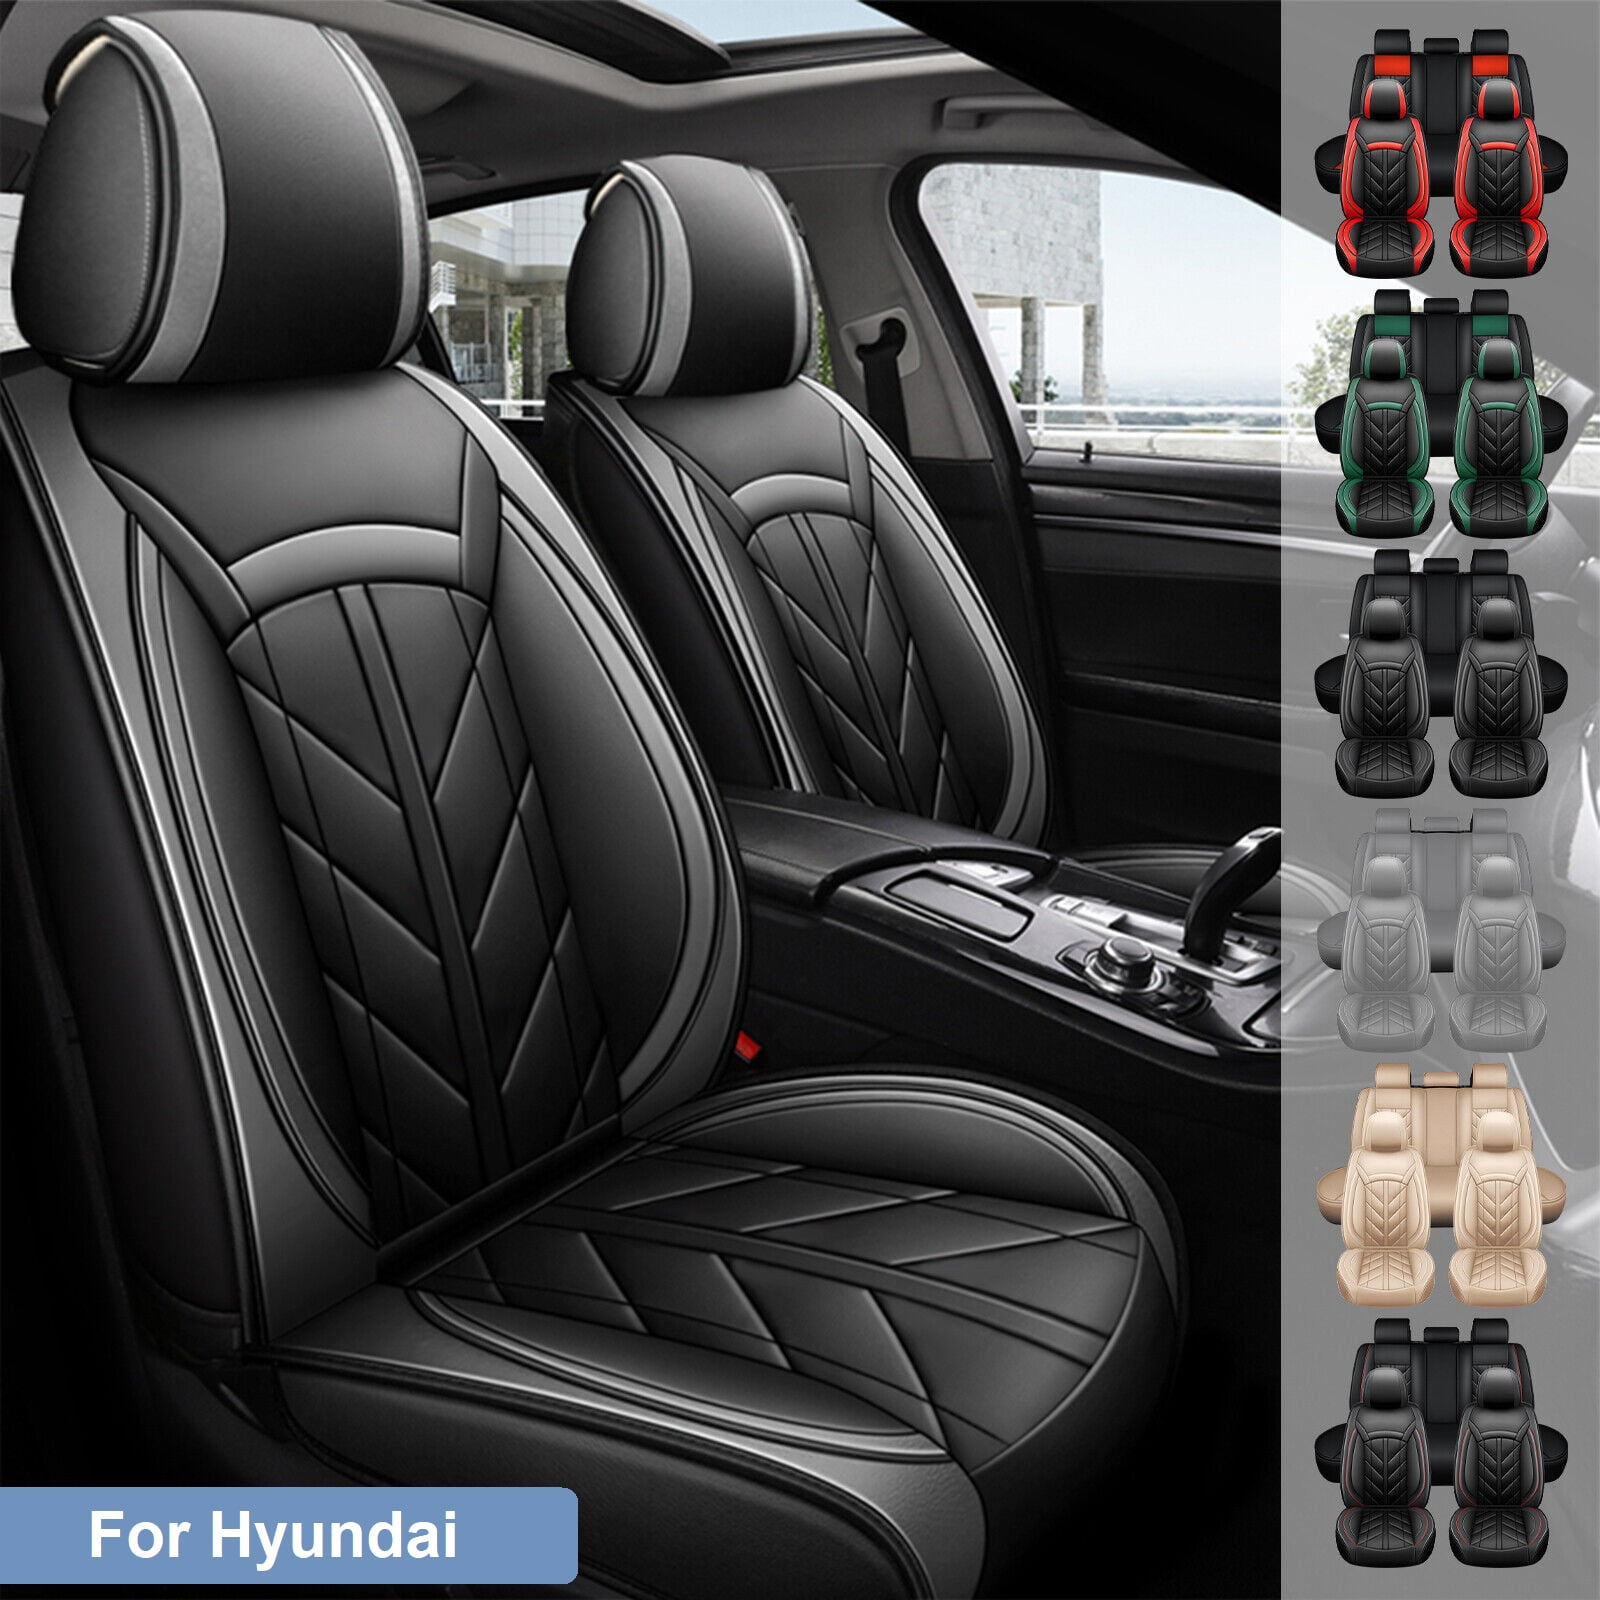 Sitzbezüge Auto Für Hyundai Für Creta Für Encino Für Elantra PU